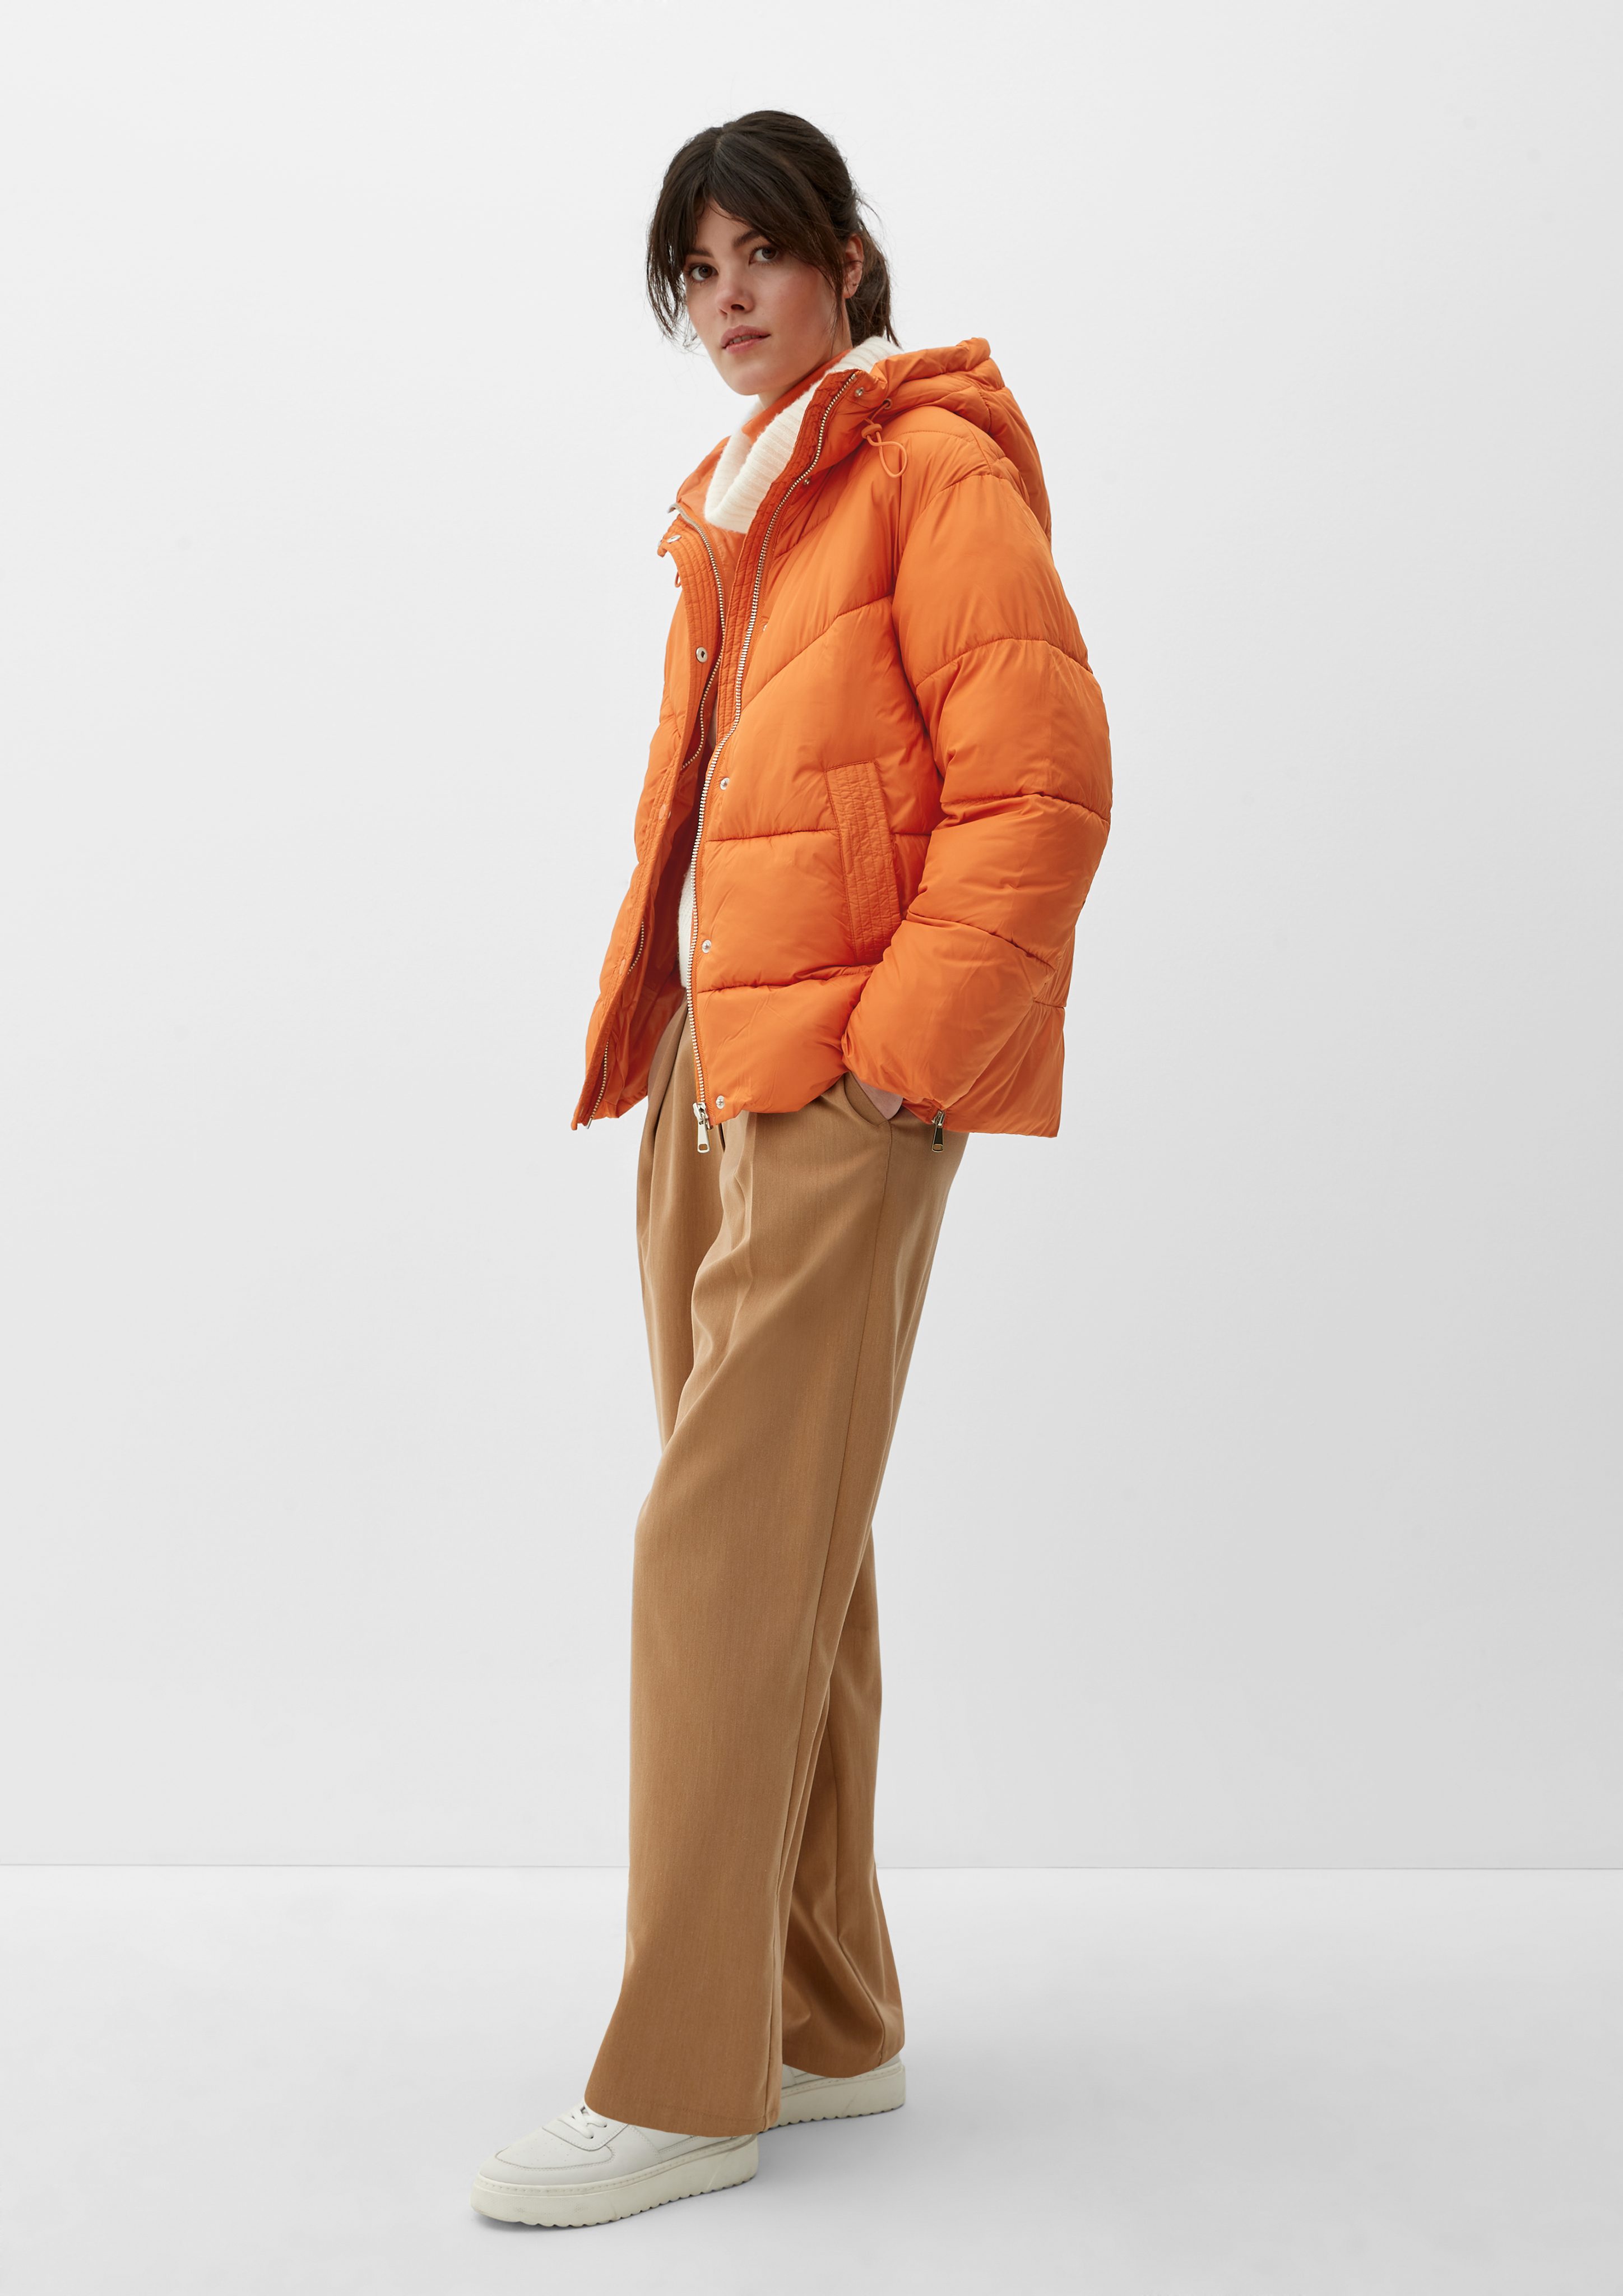 s.Oliver Outdoorjacke Warm wattierte light orange Pufferjacket